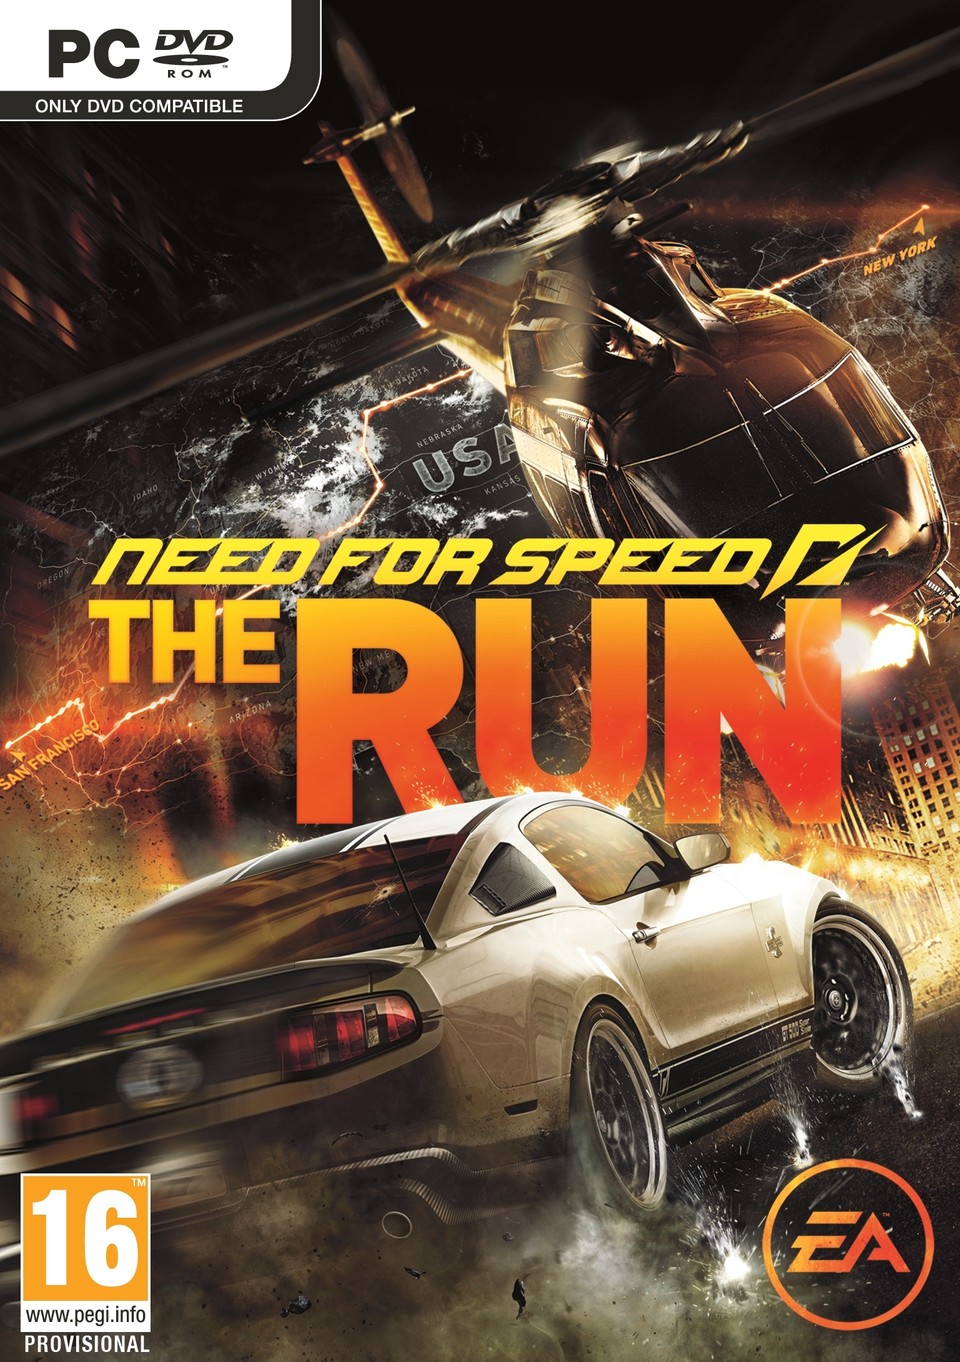 Die Limited Edition von Need for Speed: The Run bietet exklusive Inhalte.